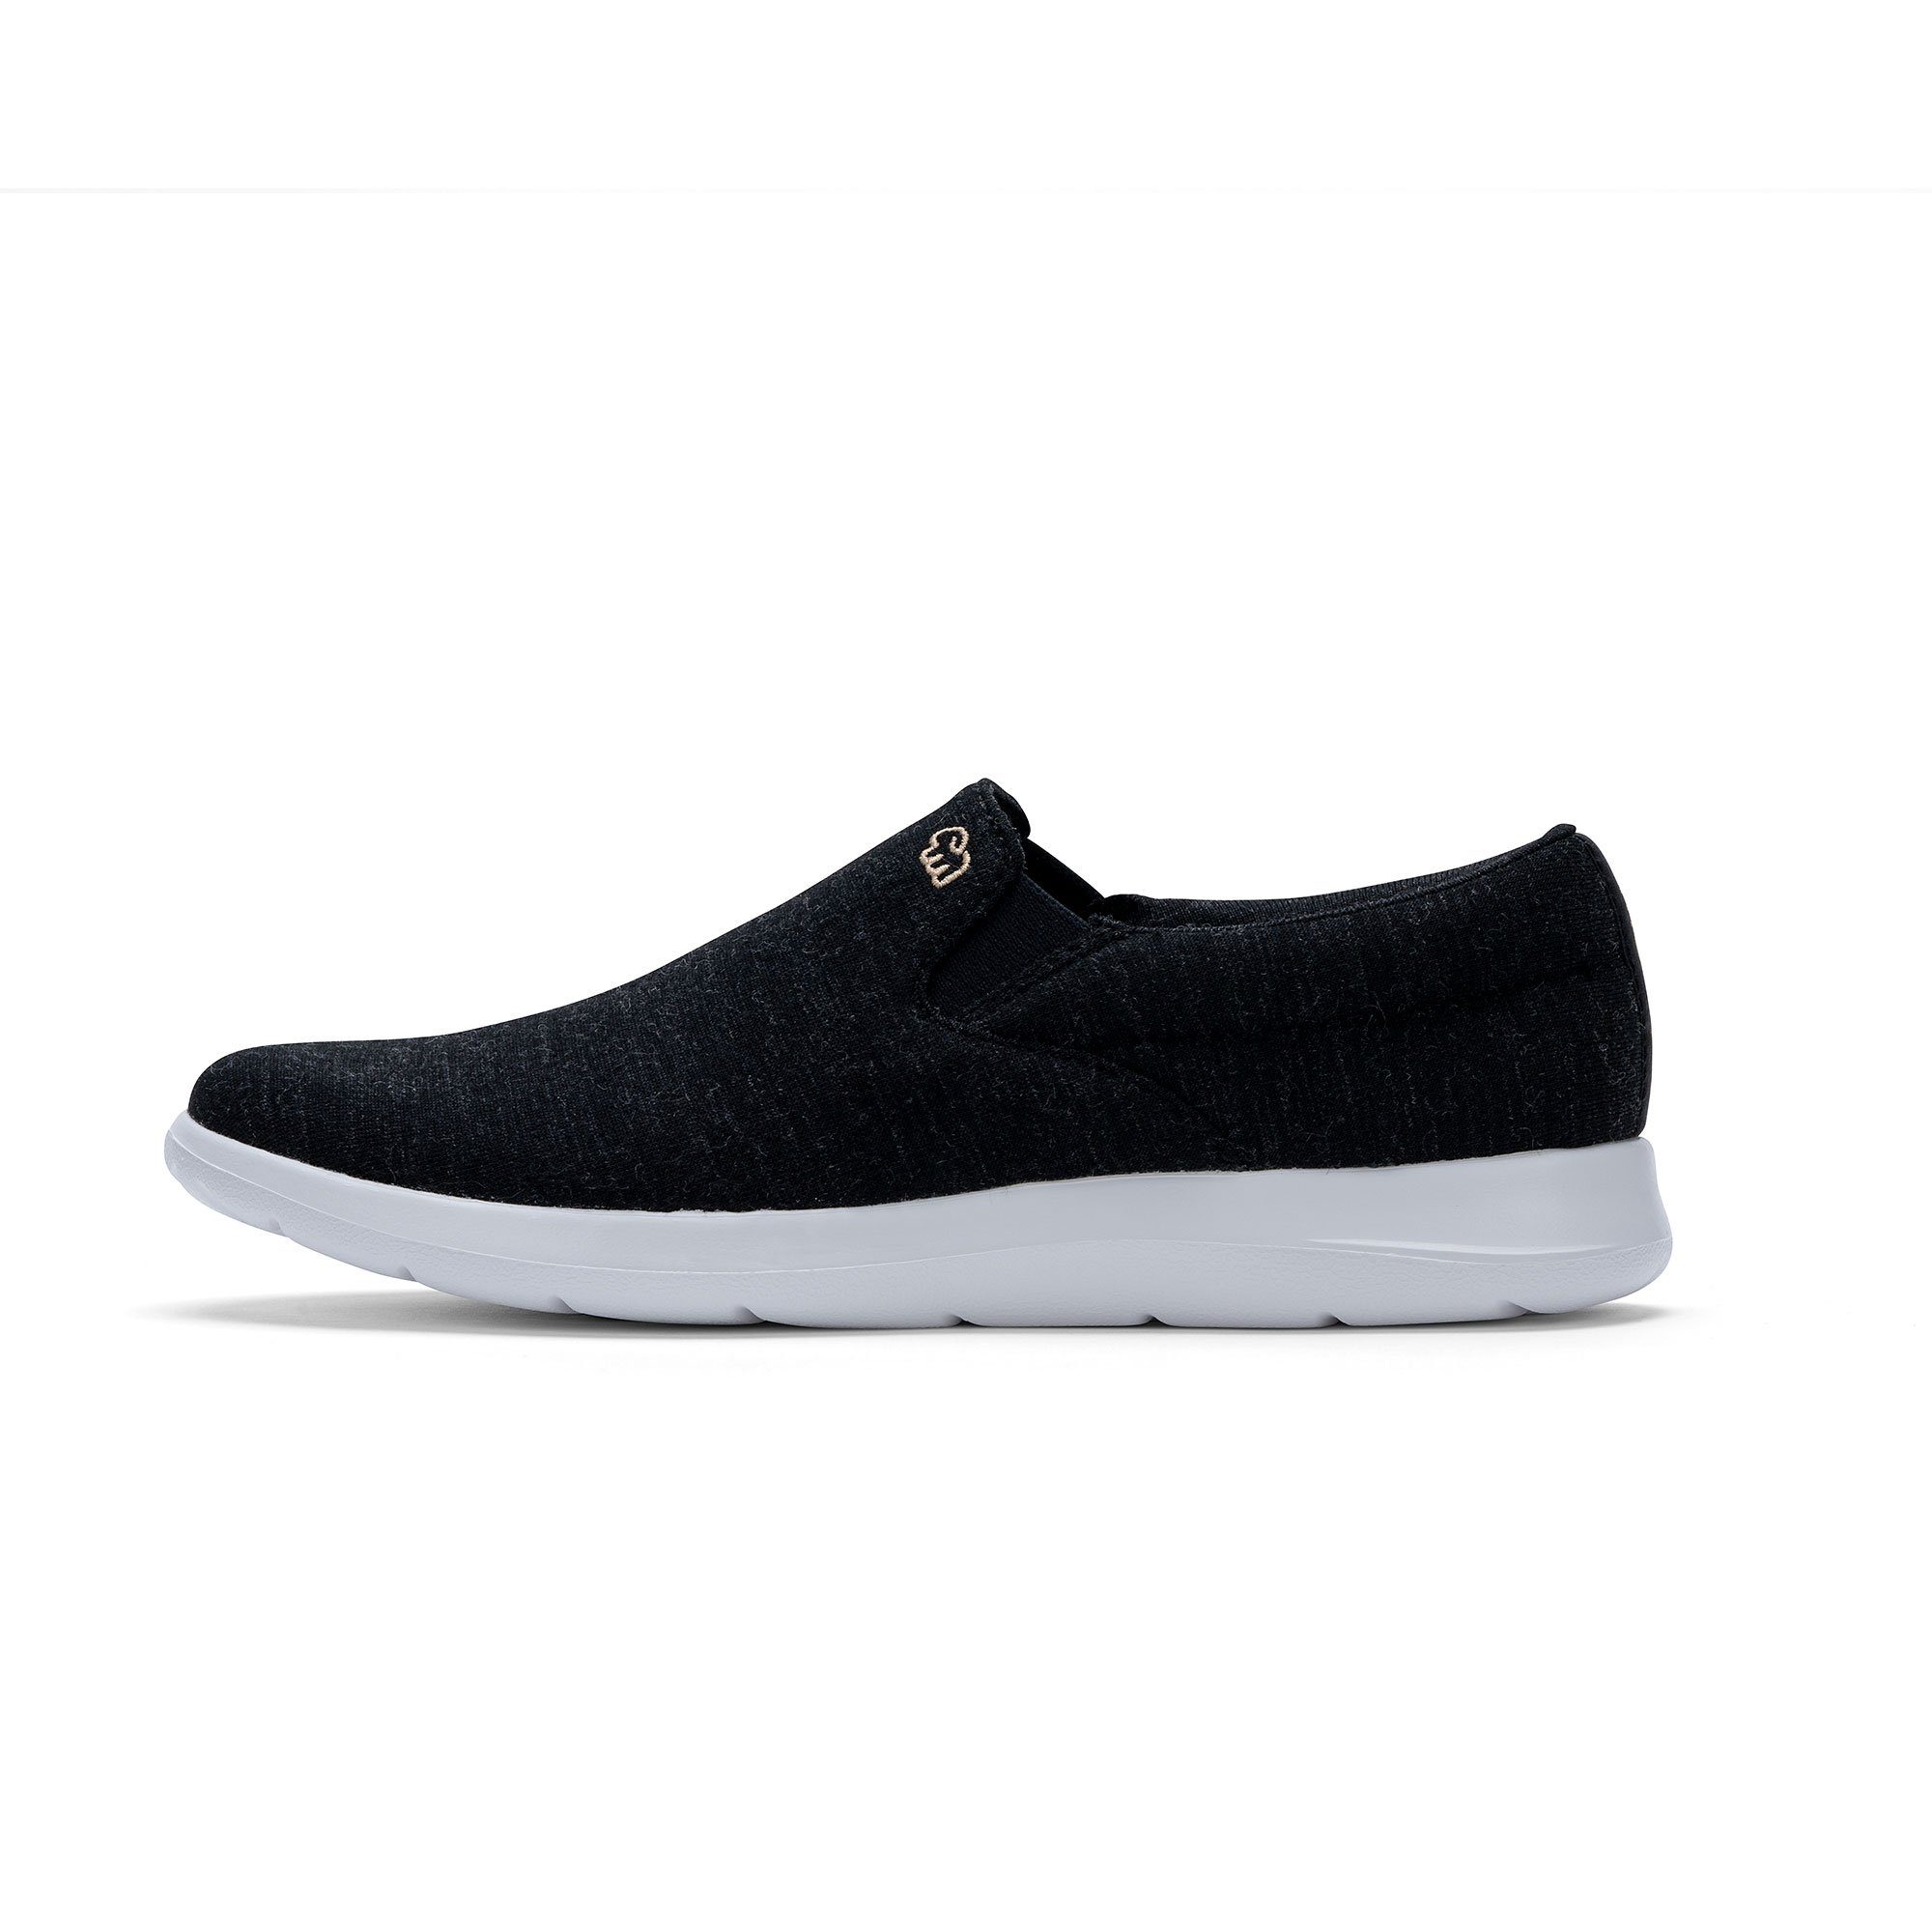 merinos - Eleganter schwarz-weiß Funktion Slip-On & Damenschuh Sneaker aus merinoshoes.de schwarz weißer Atmungsaktiver mit Schuh Merinowolle